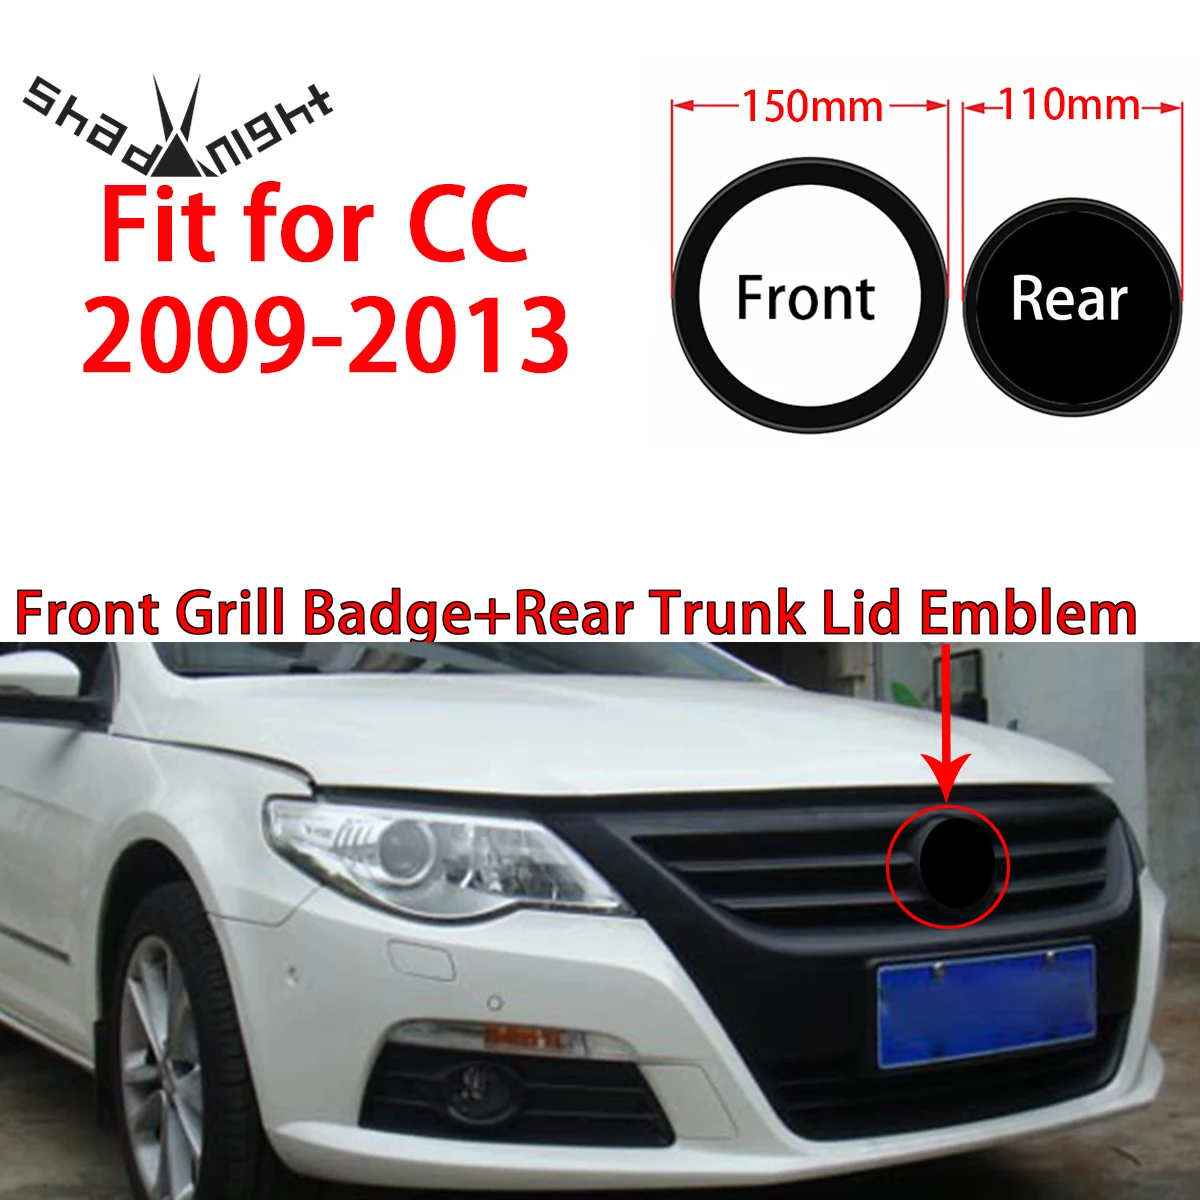 

Глянцевая черная эмблема для передней решетки радиатора 150 мм + Эмблема для крышки багажника 110 мм, эмблема для автомобиля, подходит для CC ...